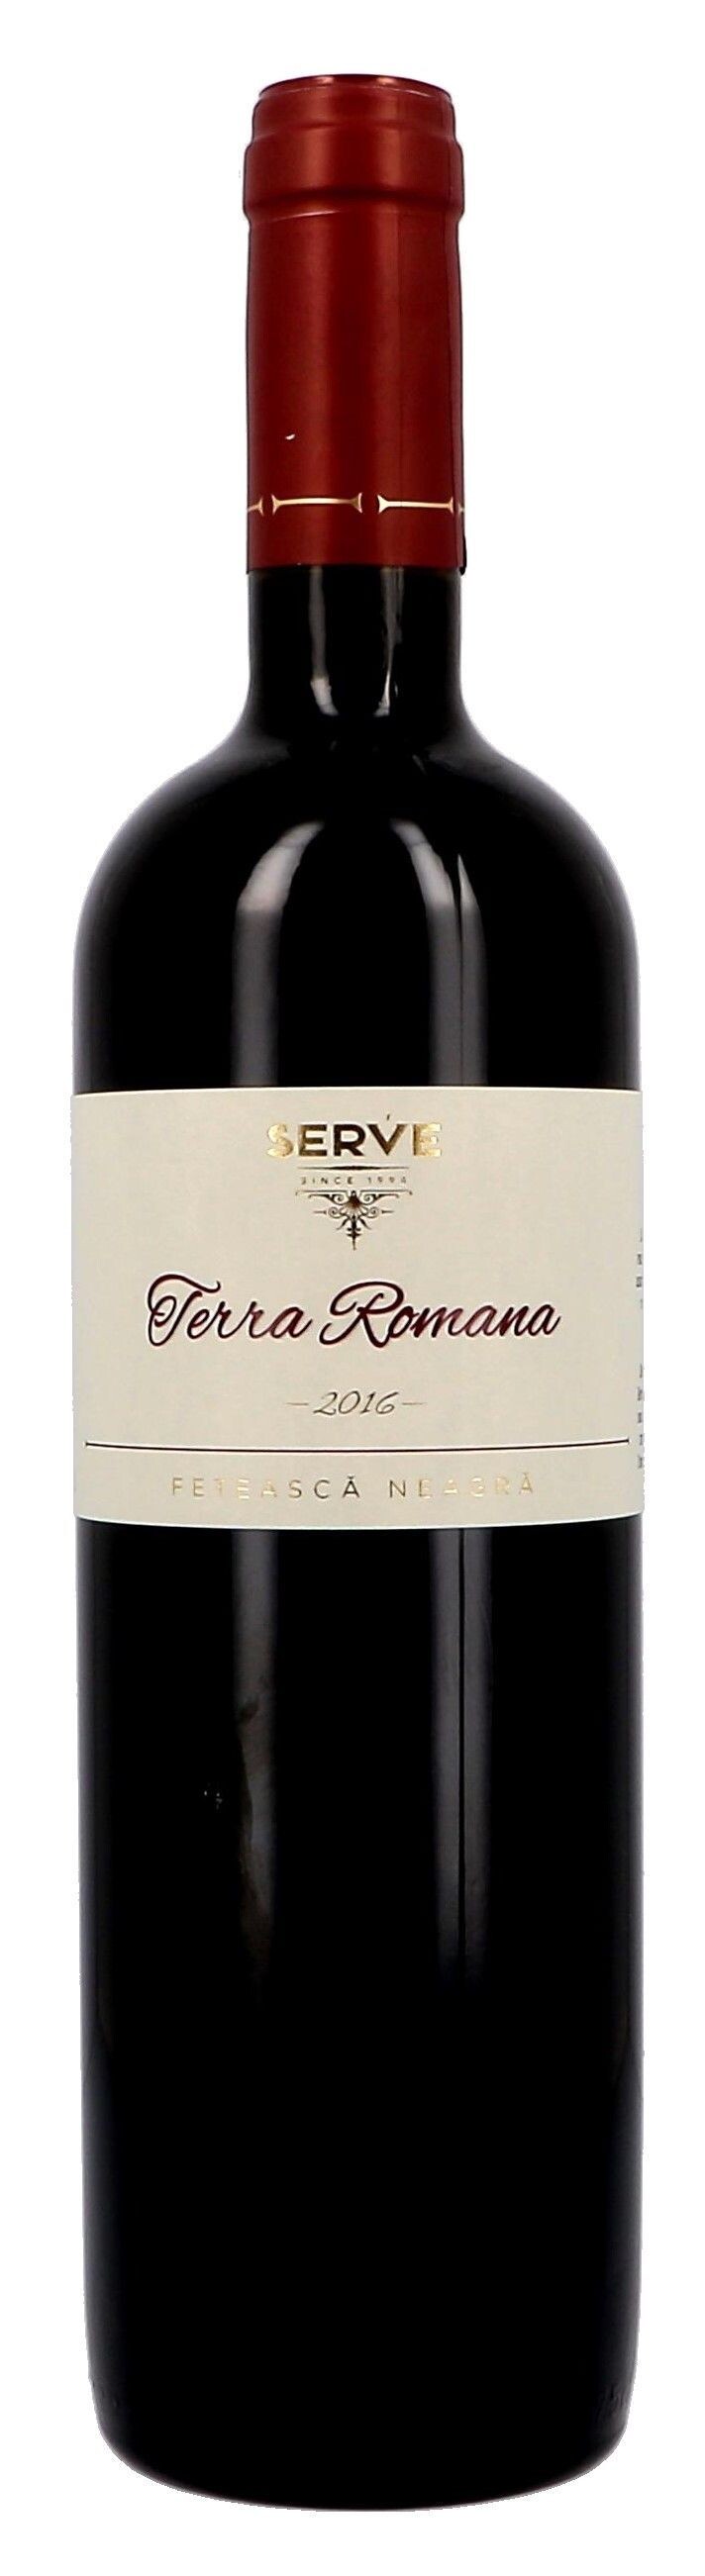 Serve Terra Romana Feteasca Neagra 75cl Romania Wine